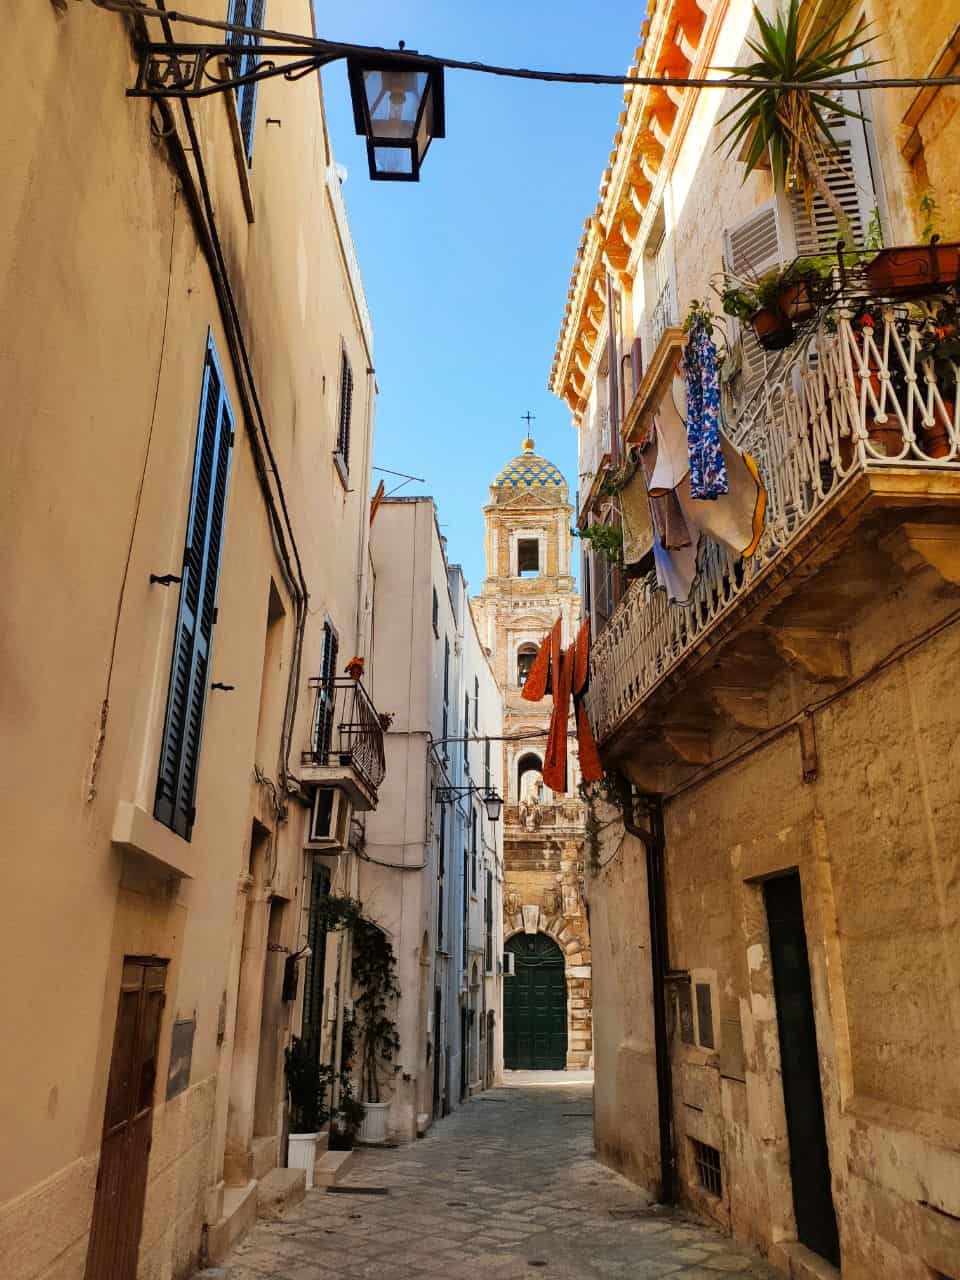 Centro storico di Conversano - 5 esperienze indimenticabili da fare in Puglia